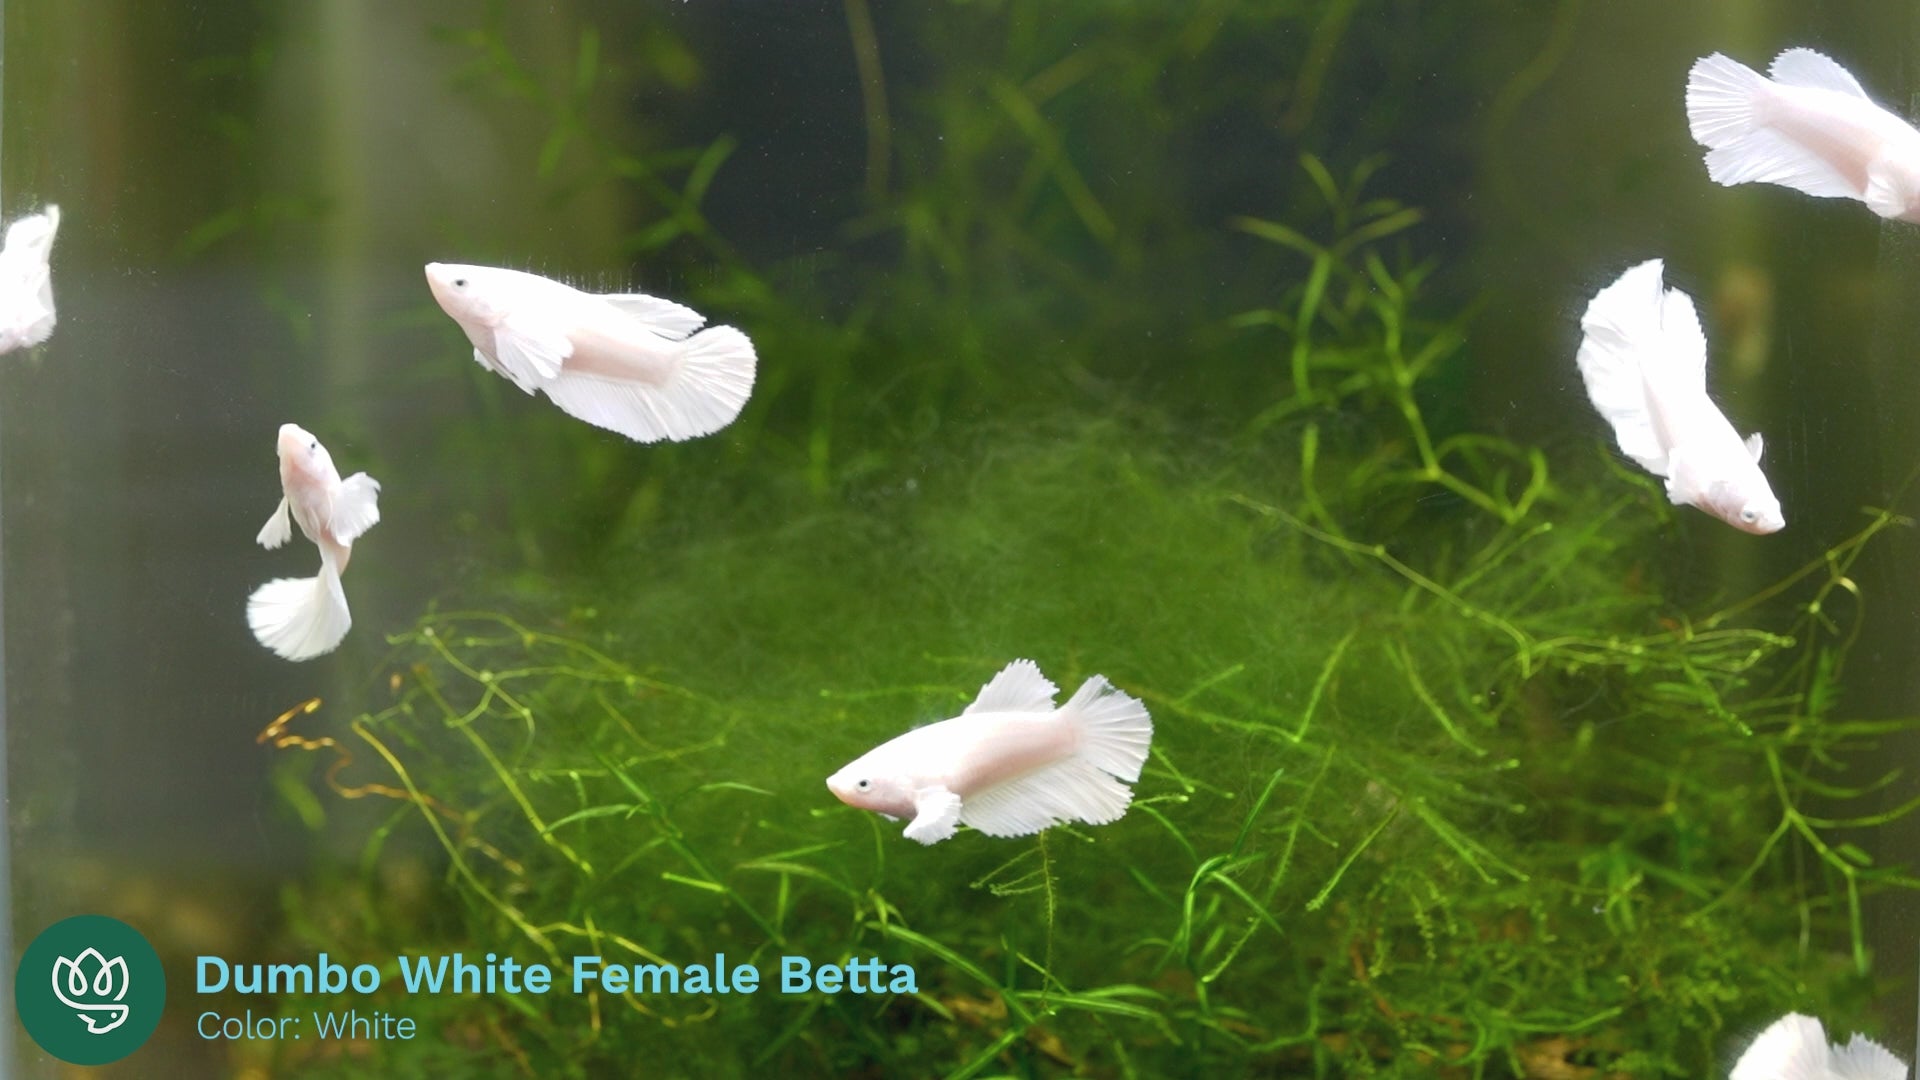 Female Betta Dumbo White 